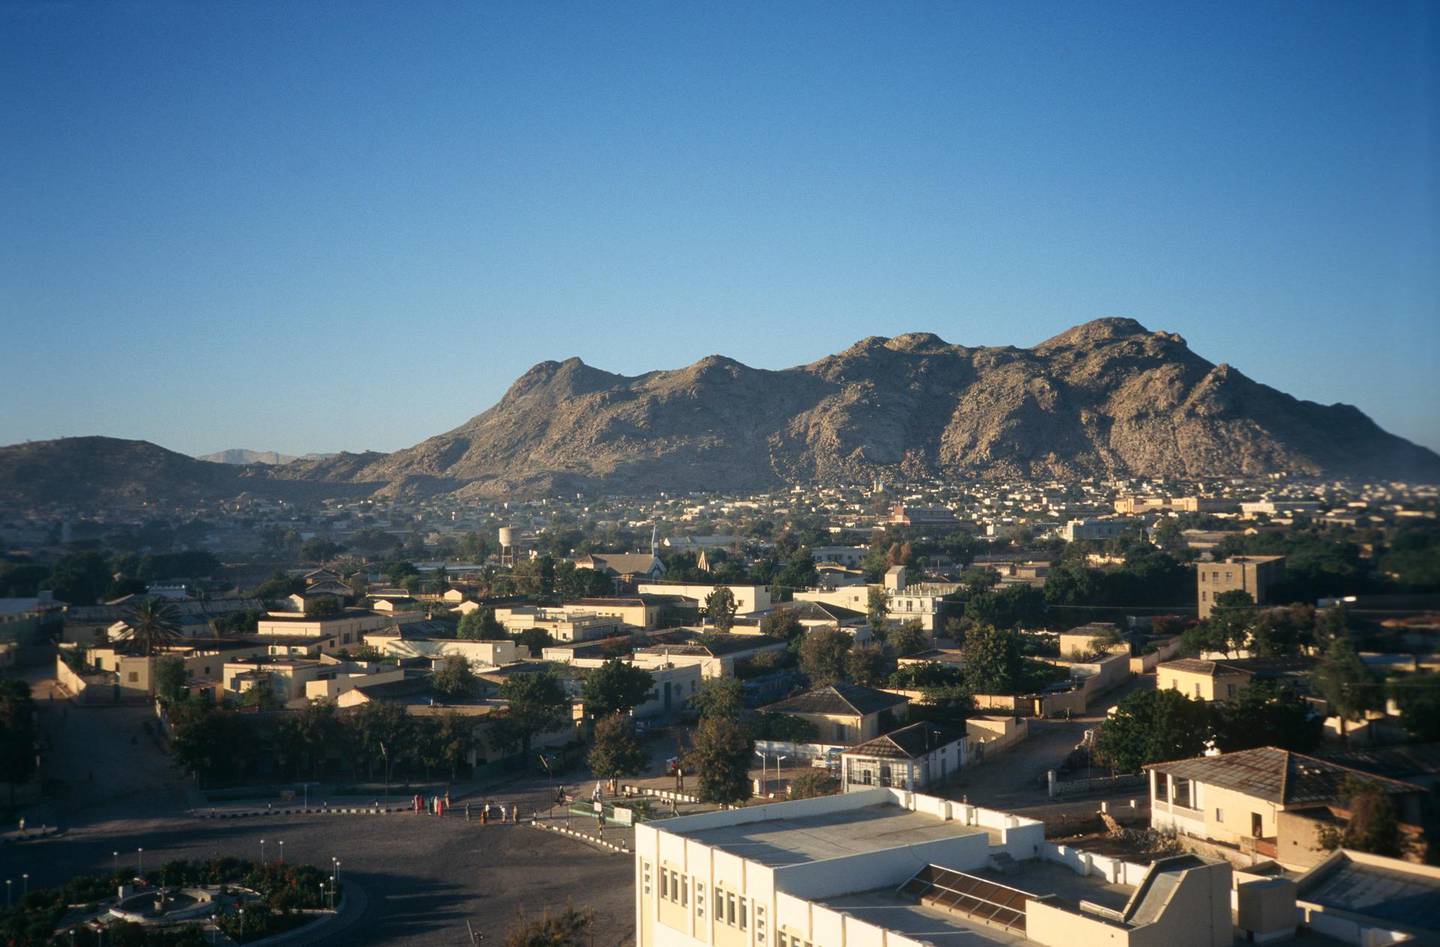 Keren, Anseba Region, Eritrea